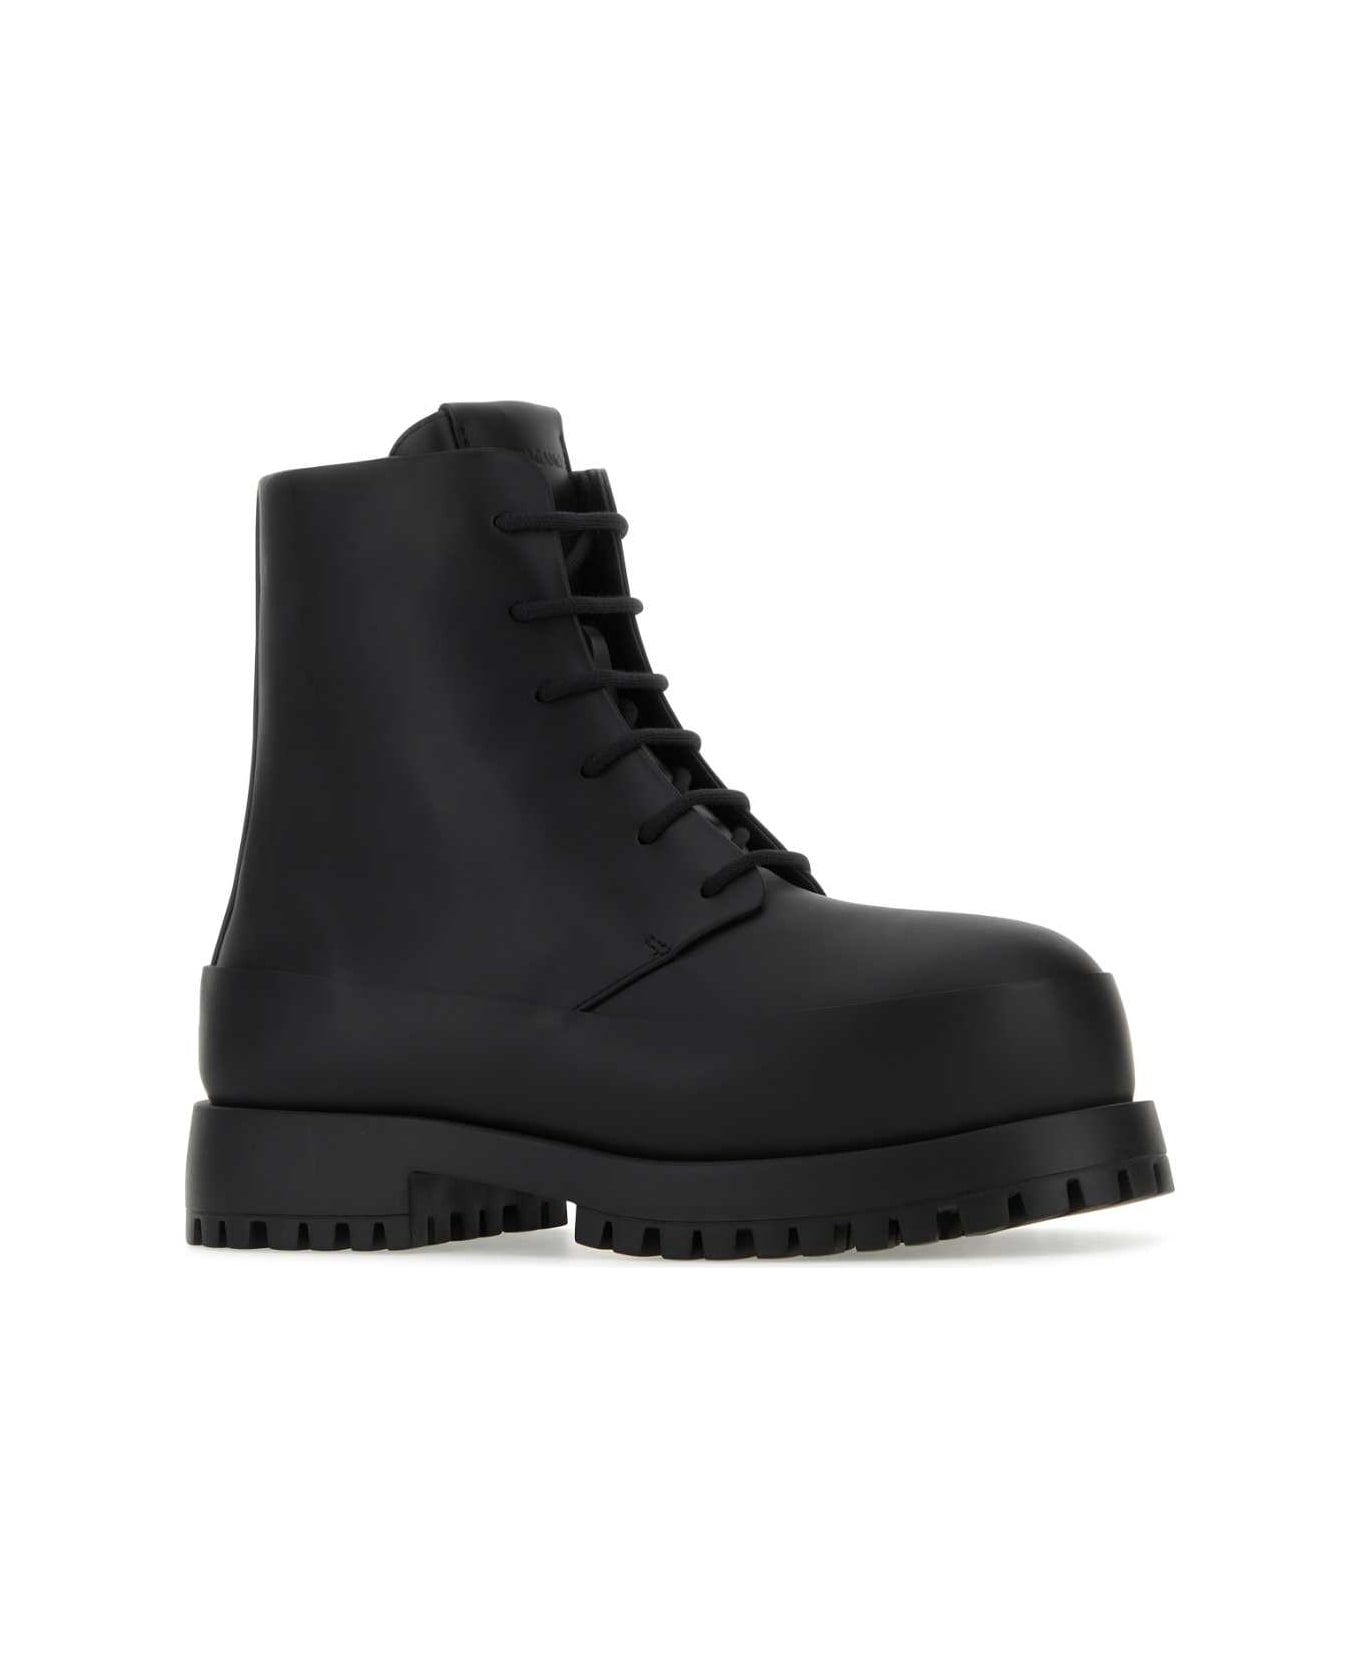 Ferragamo Black Leather Fede Ankle Boots - NERONERO